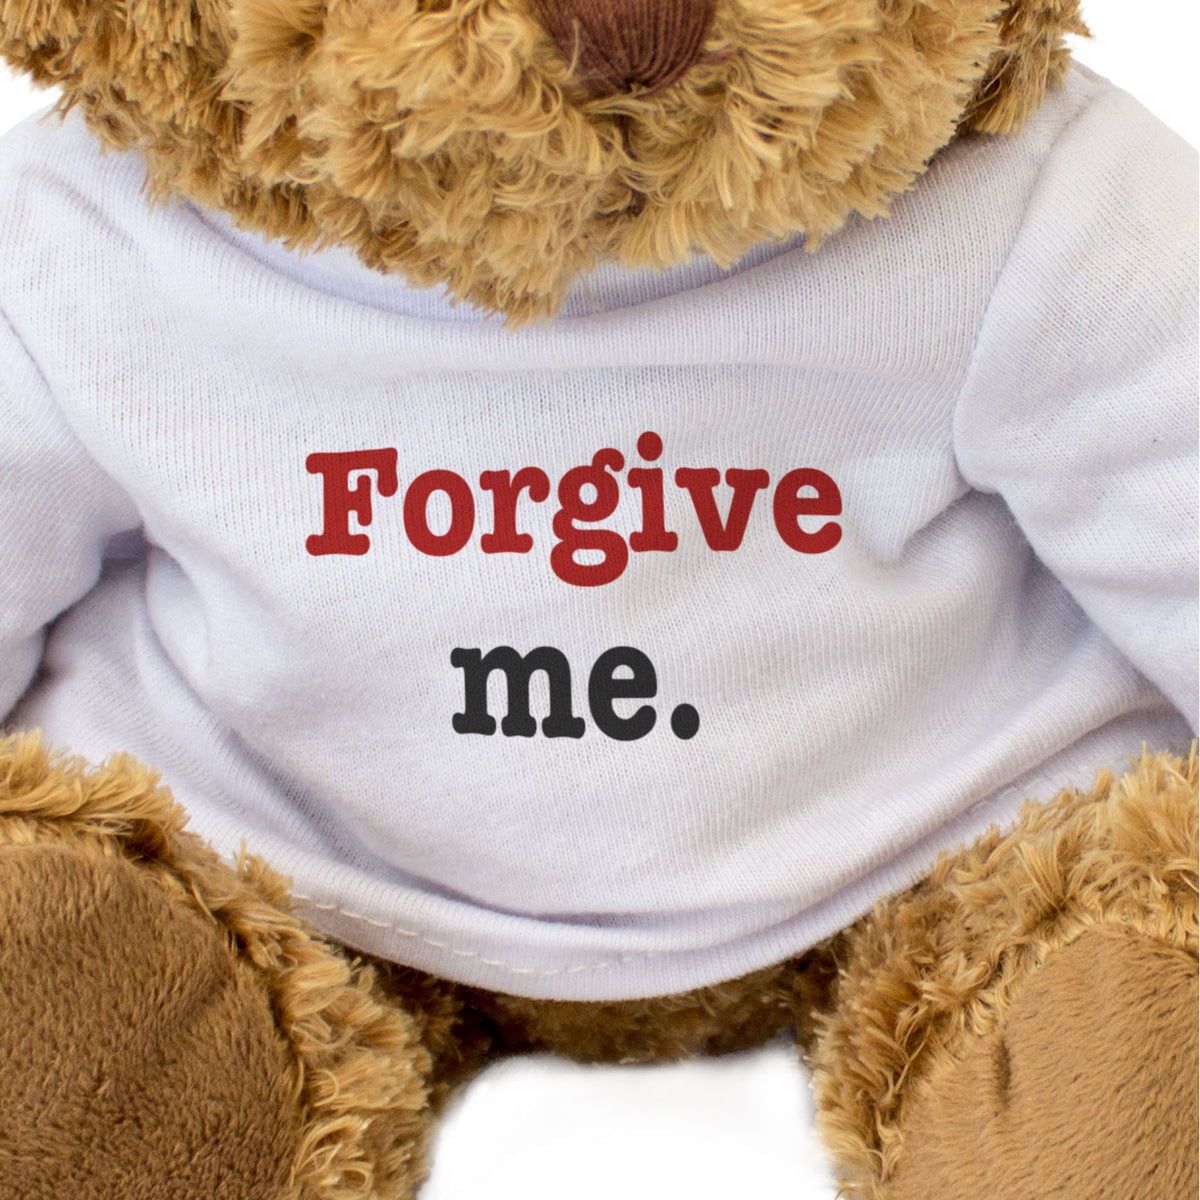 Forgive Me - Teddy Bear